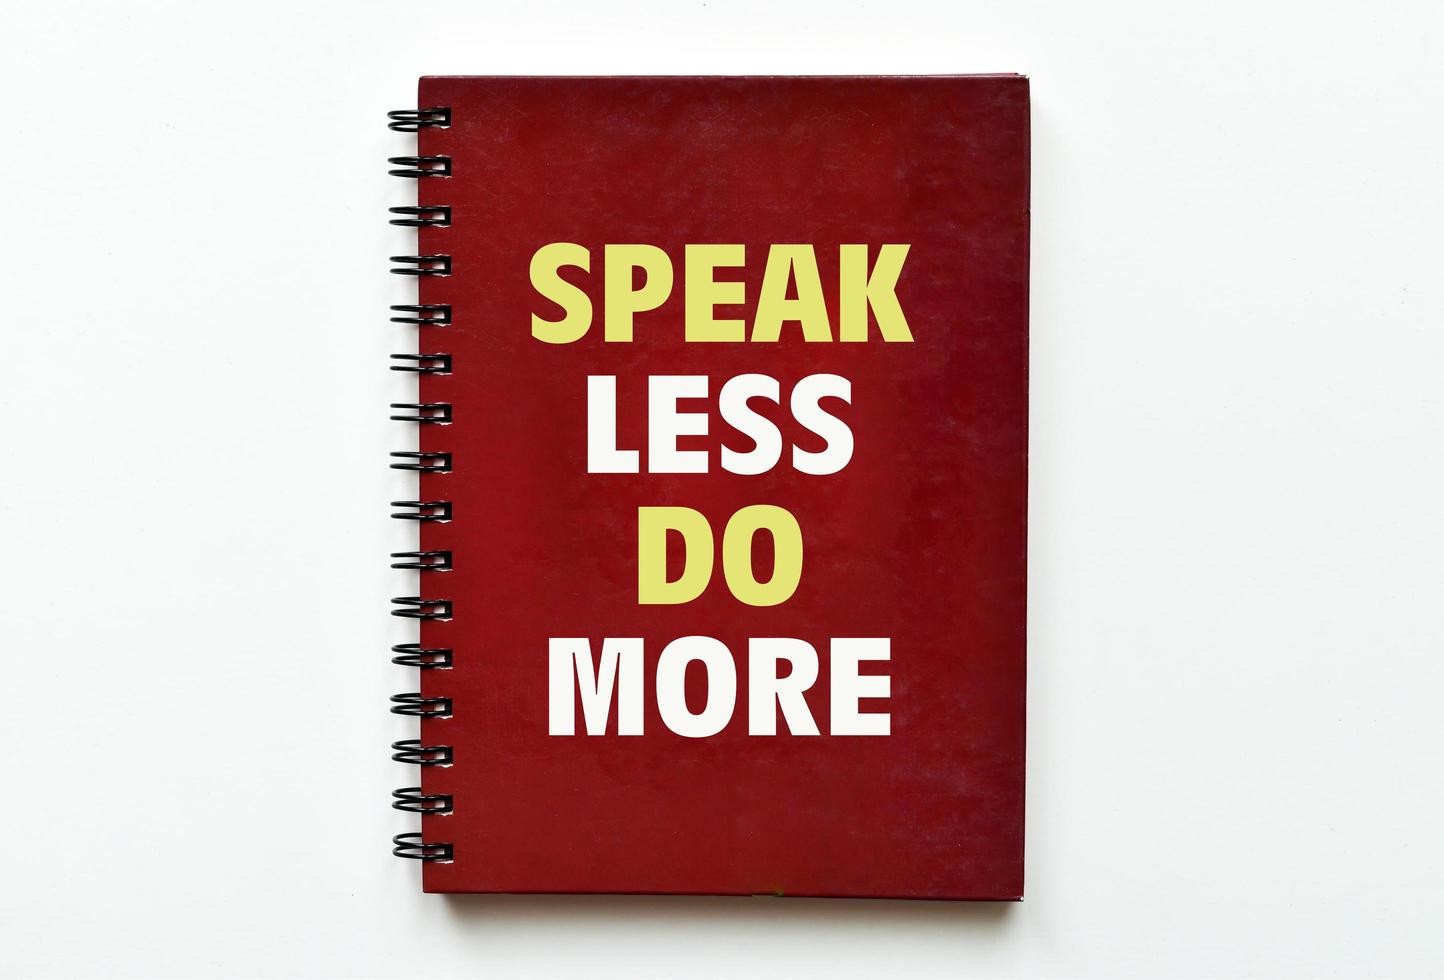 weniger sprechen, mehr tun. inspirierendes und motivierendes Zitat. foto